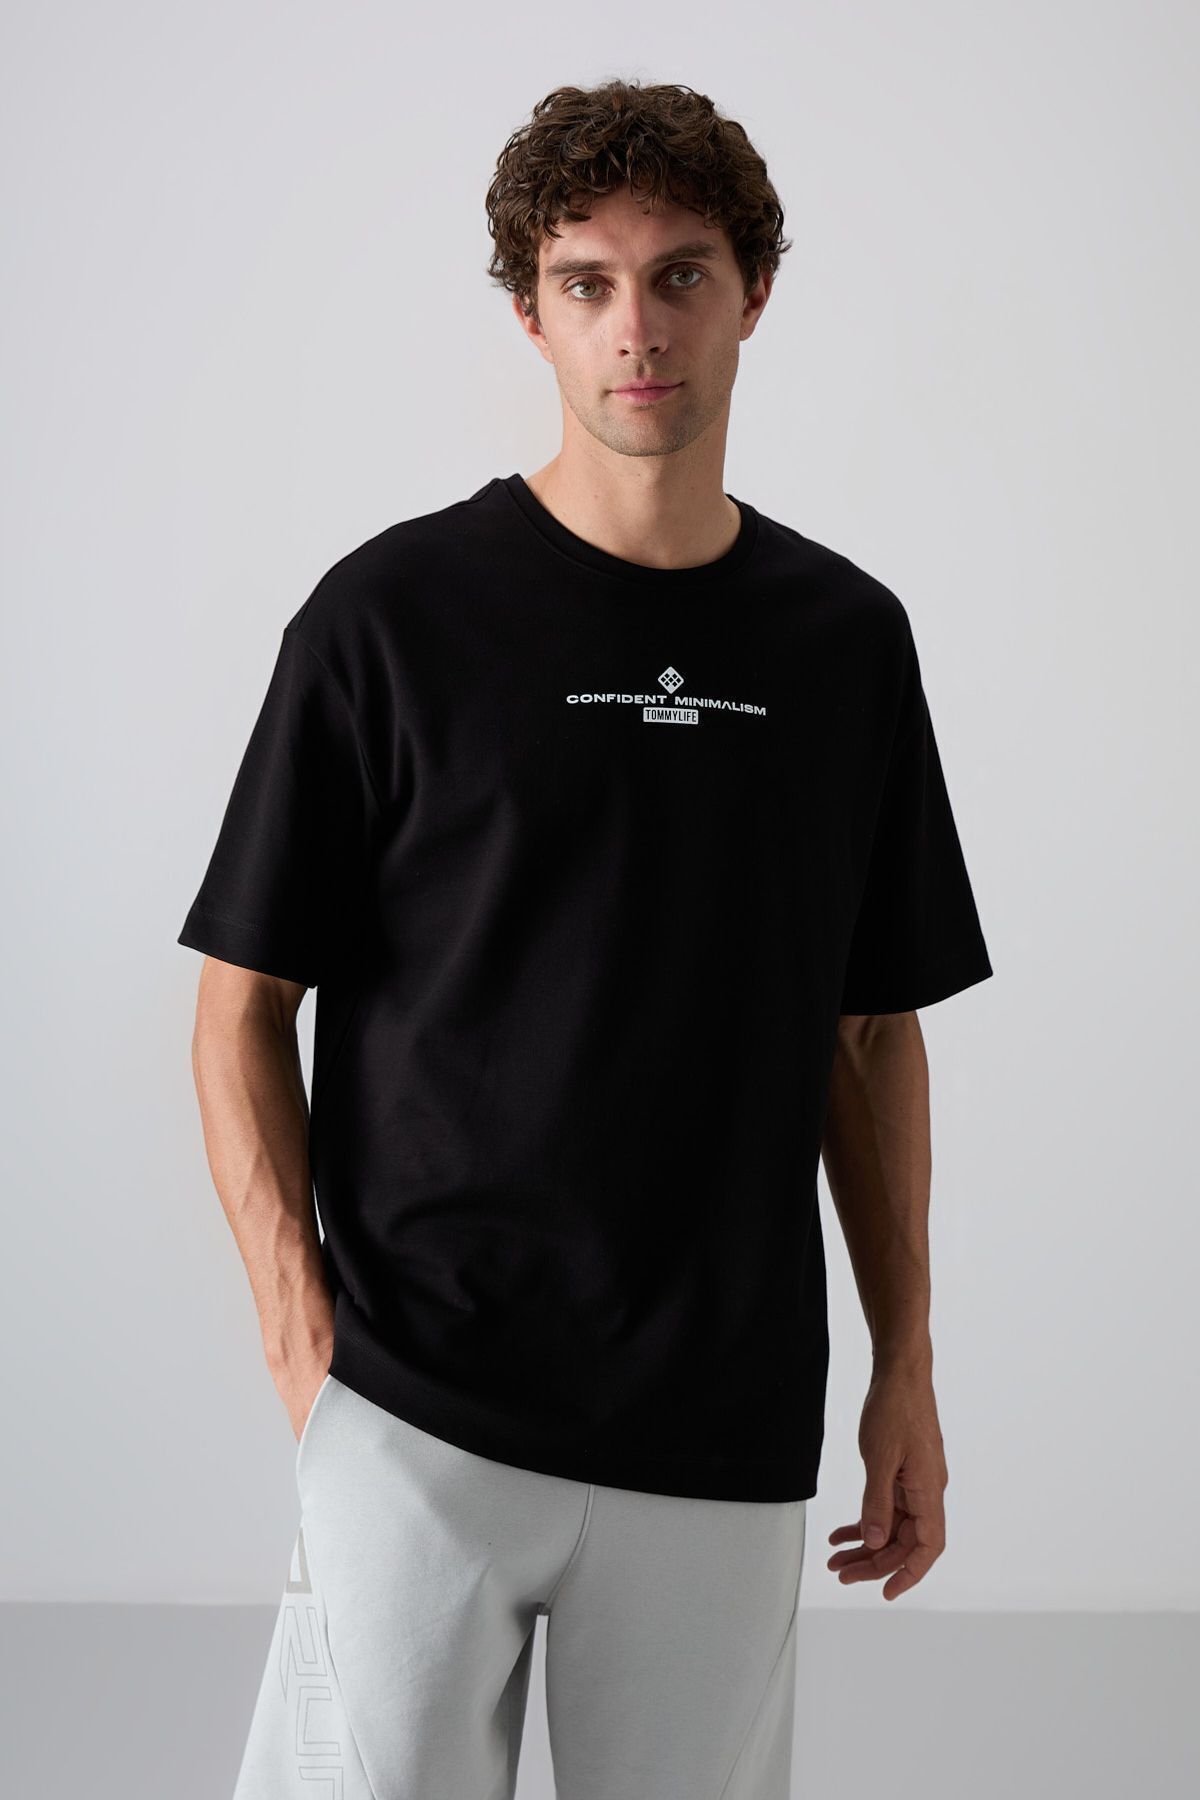 TOMMY LIFE Sıyah/Beyaz Pamuklu Kalın Yumuşak Dokulu Oversize Fit Baskılı Erkek T-Shirt - 88321